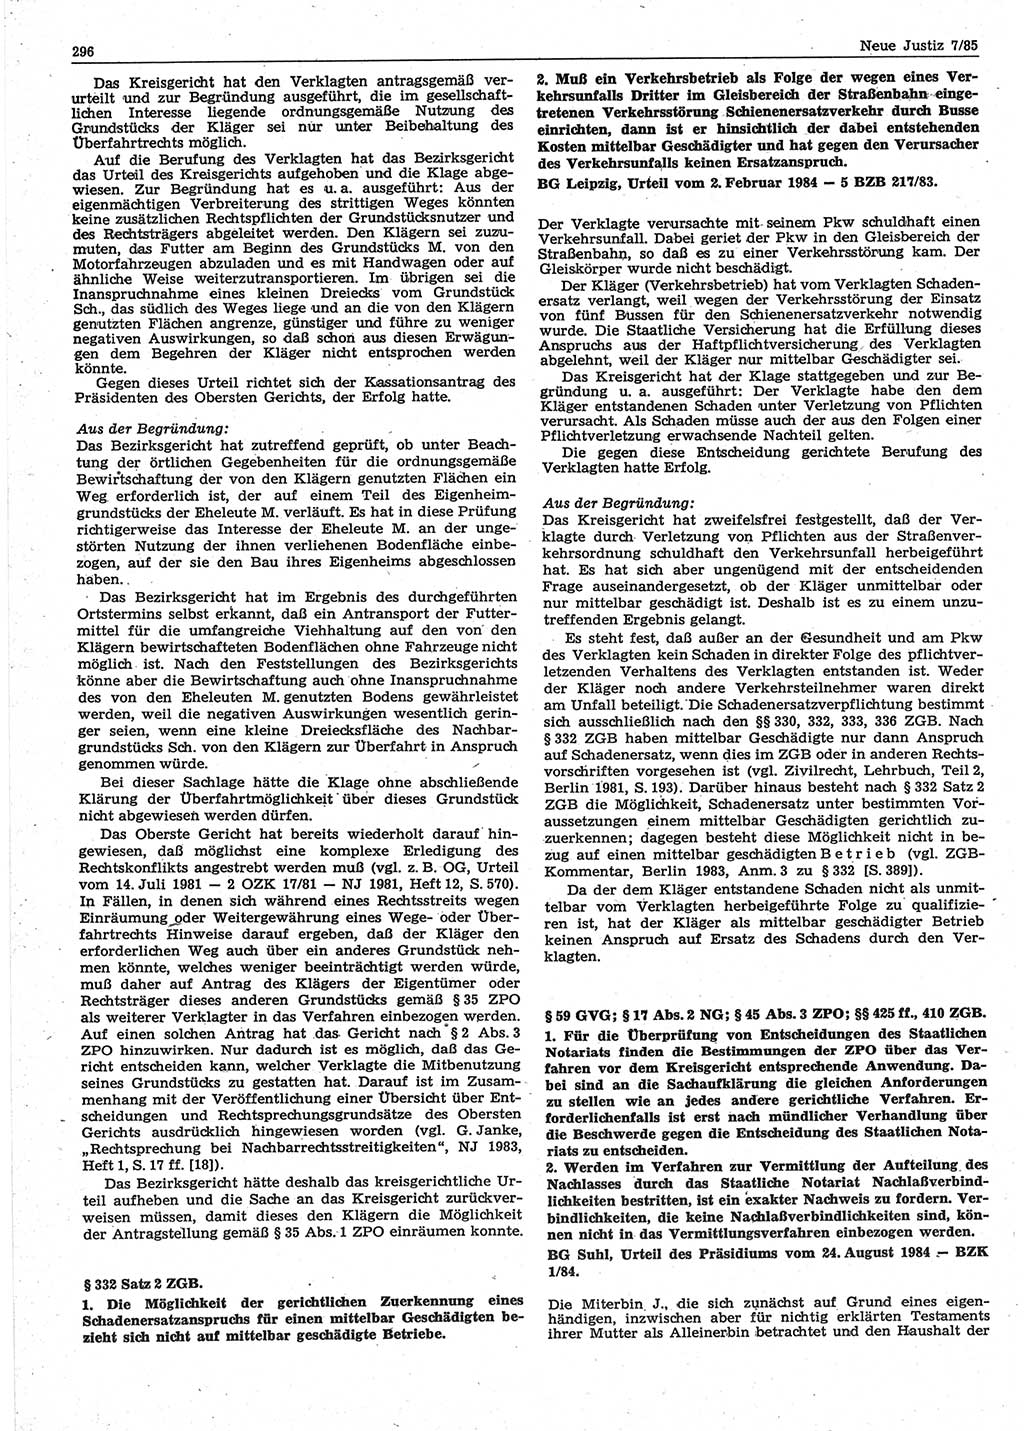 Neue Justiz (NJ), Zeitschrift für sozialistisches Recht und Gesetzlichkeit [Deutsche Demokratische Republik (DDR)], 39. Jahrgang 1985, Seite 296 (NJ DDR 1985, S. 296)